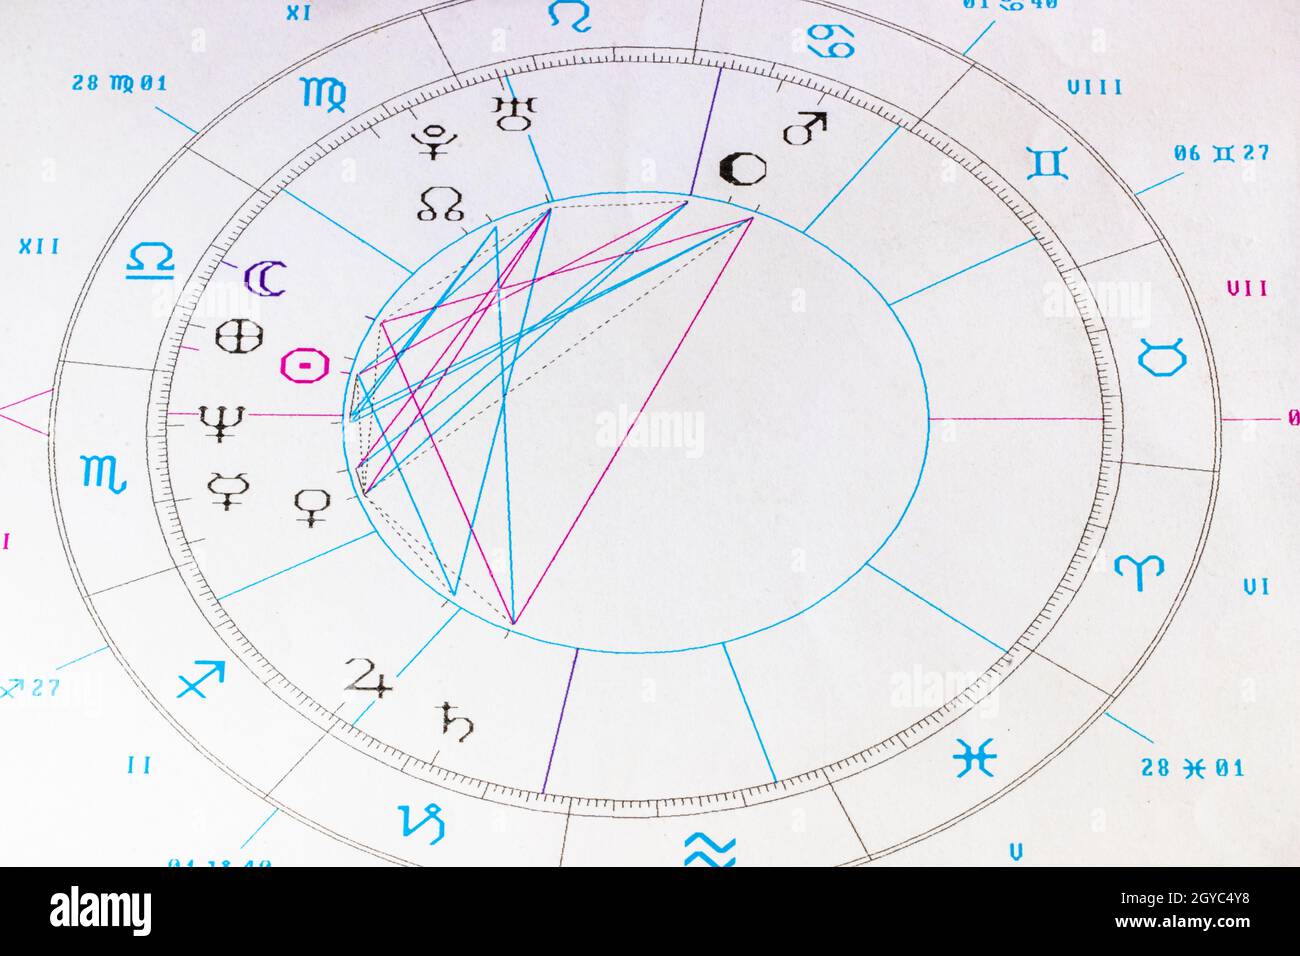 Gros plan du tableau de naissance d'une personne en astrologie Banque D'Images